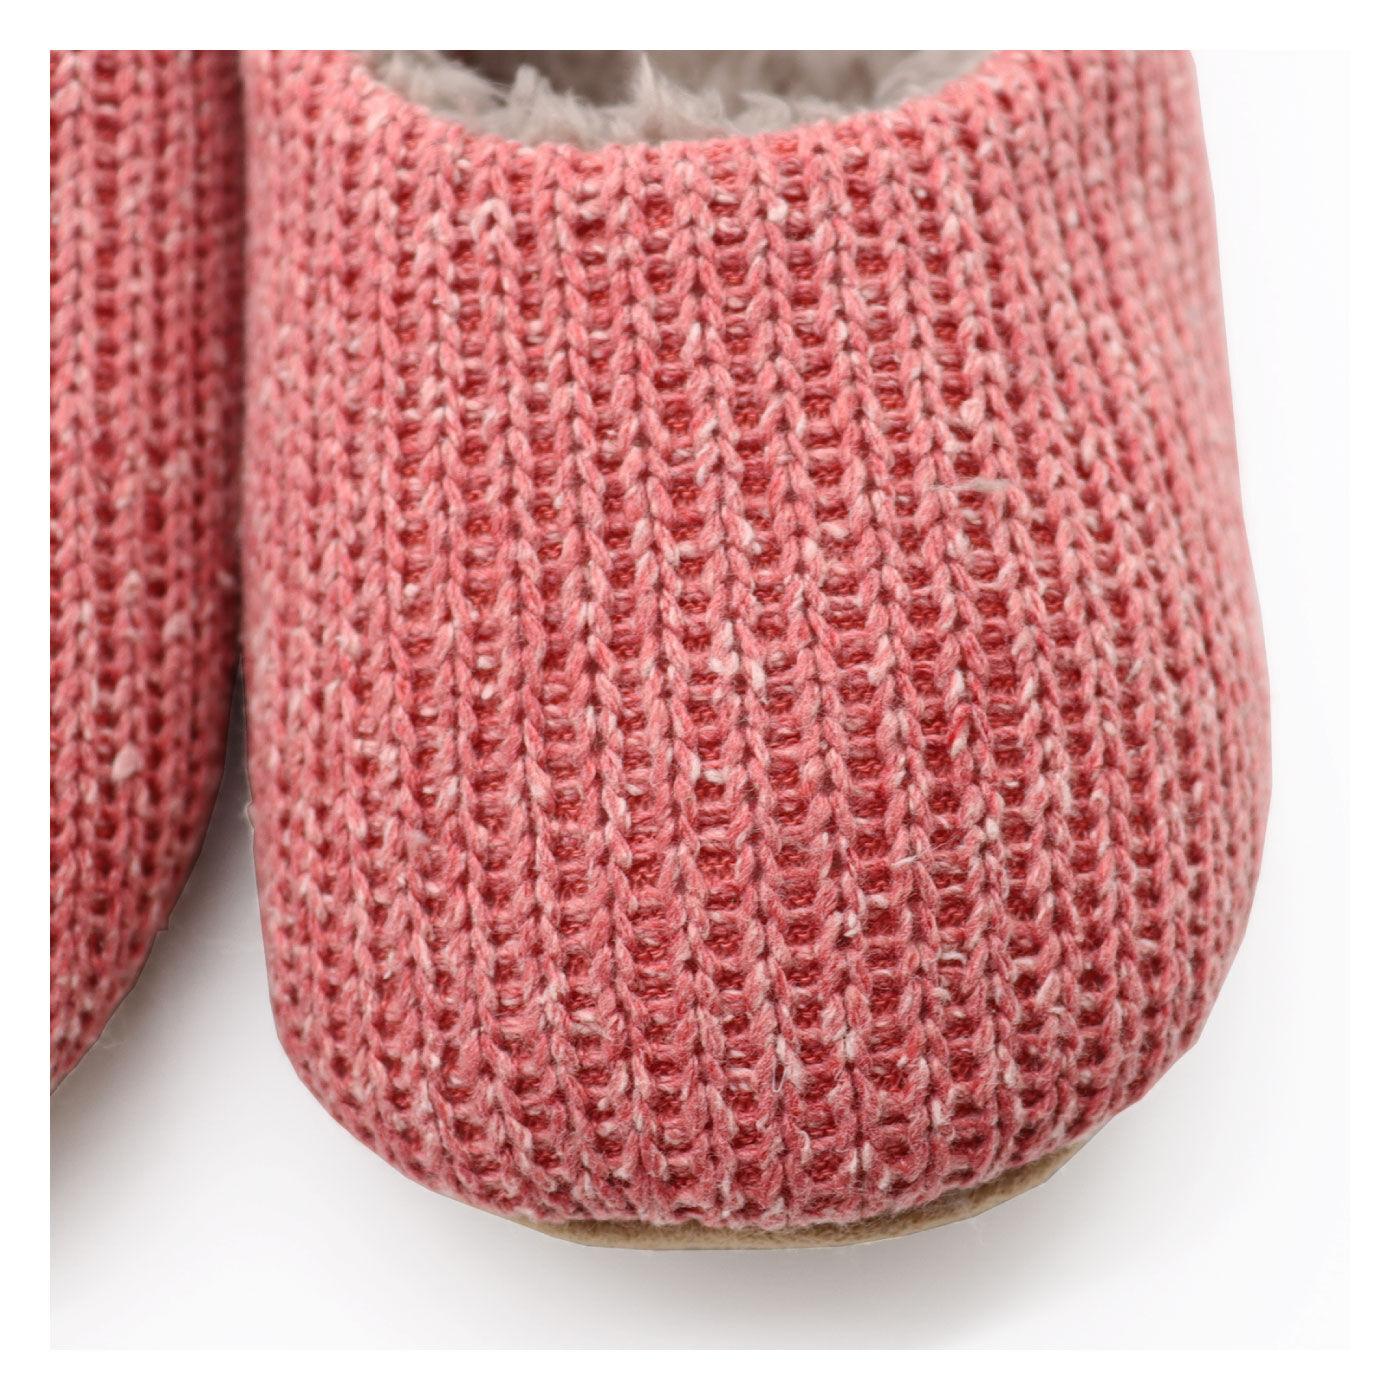 FELISSIMO PARTNERS|靴下感覚で履けるルームシューズnukumori|外側はざっくりとした手編み風のミックスヤーンのニット。